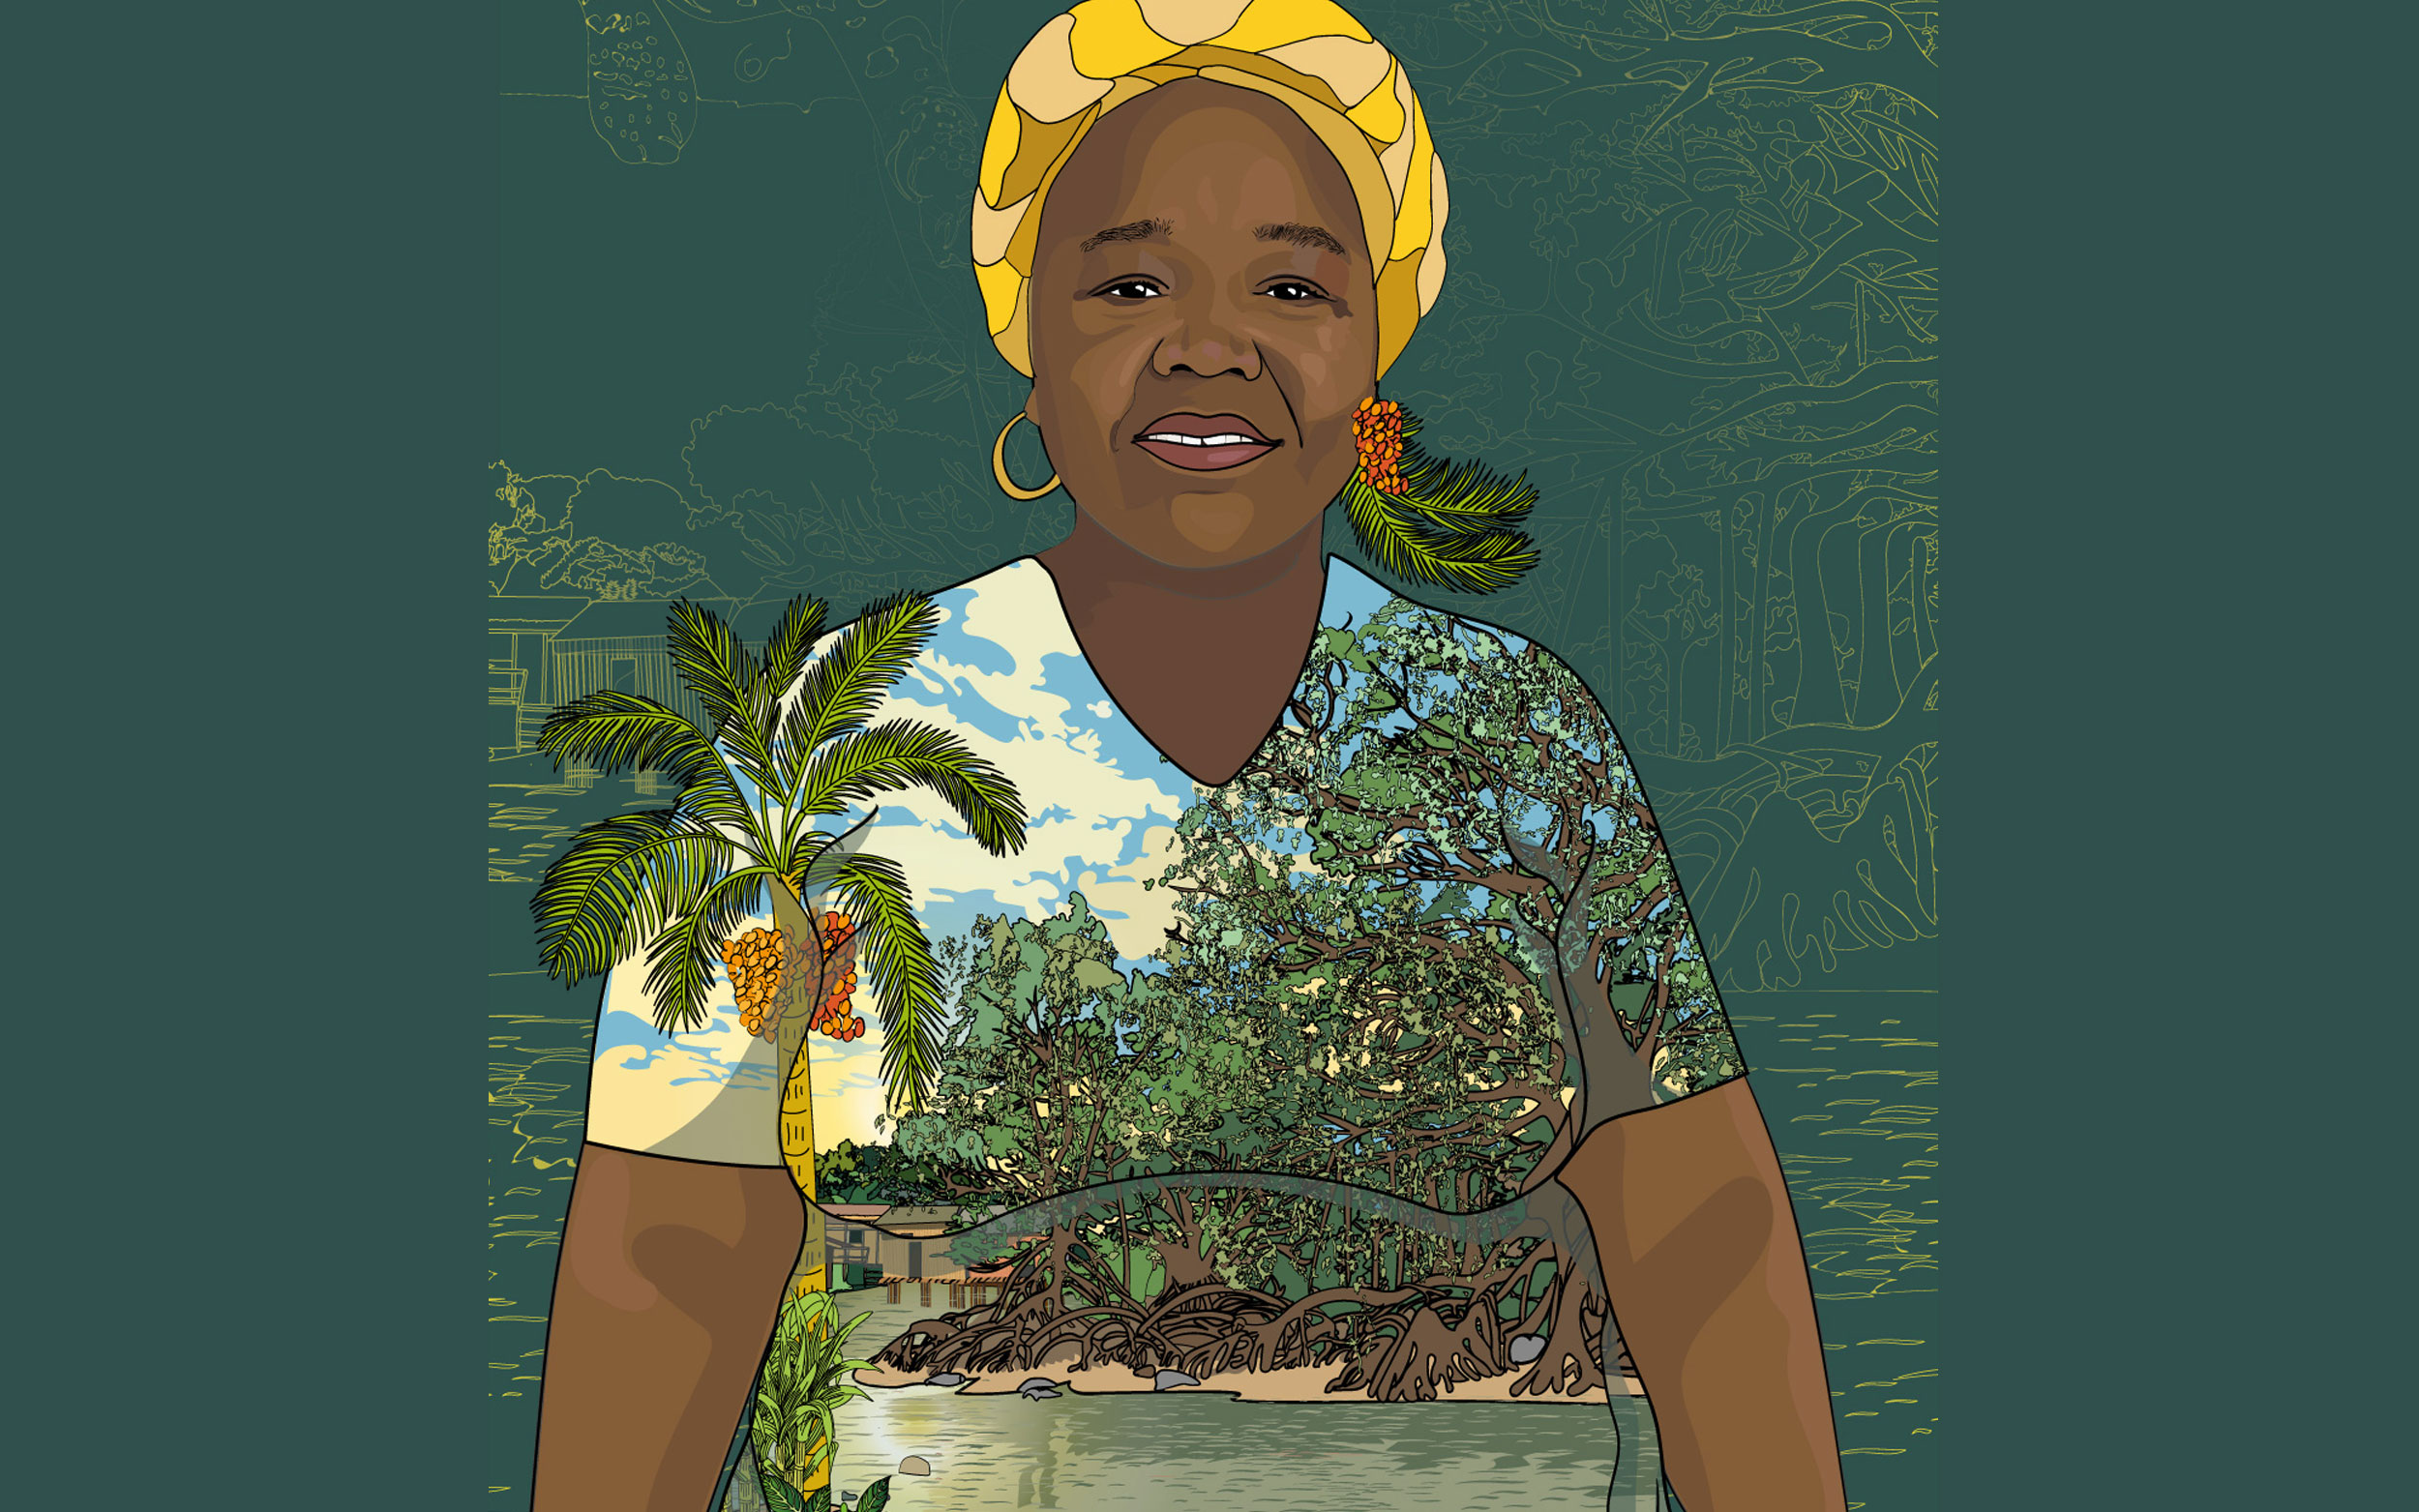 Retrato ilustrado de Gloria Amparo con turbante amarillo, estampado en el blusón hay un paisaje con palmas